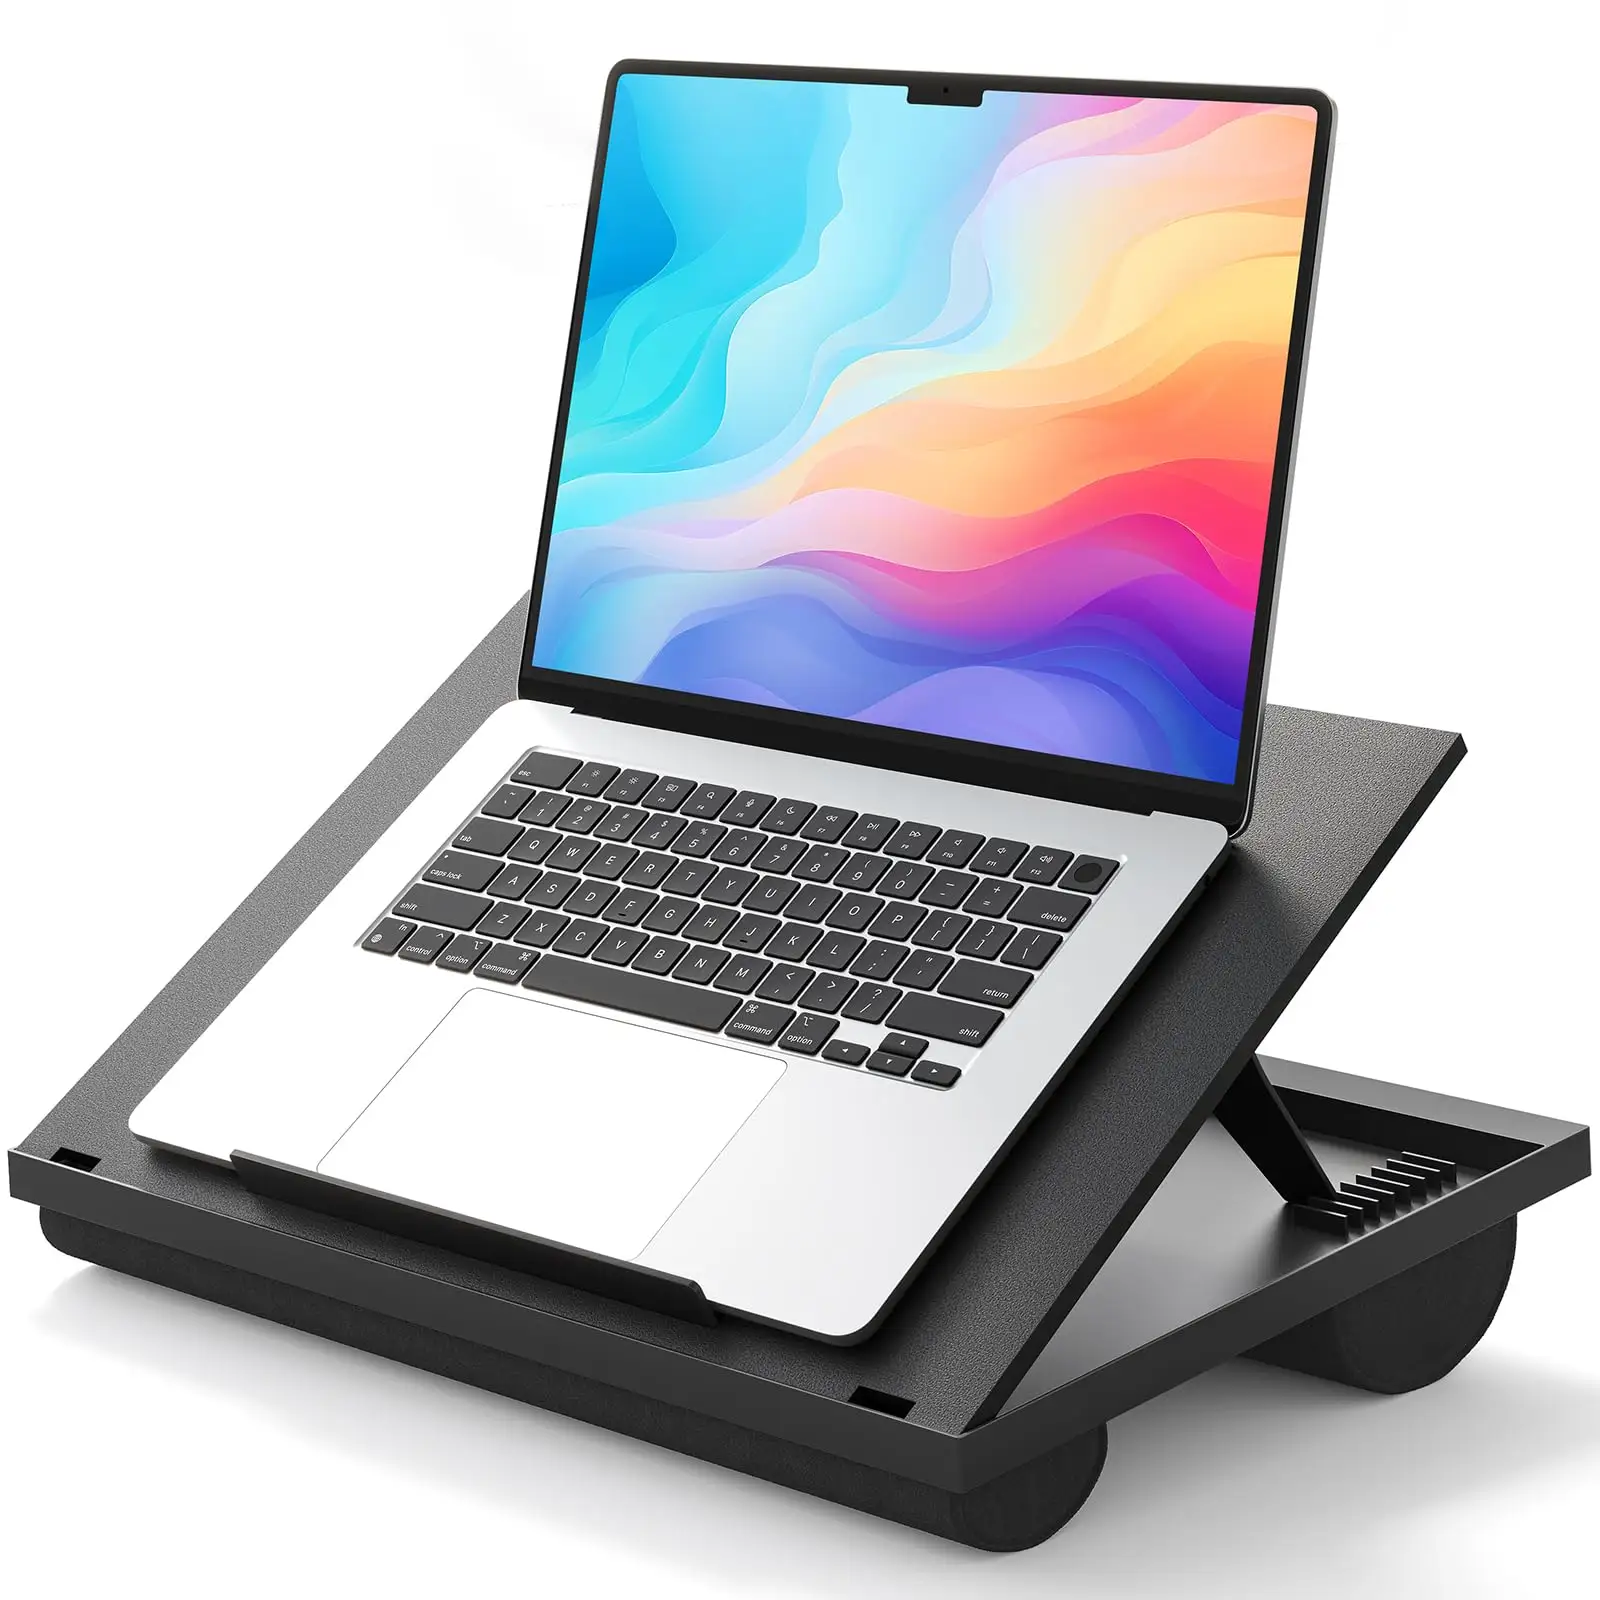 Suporte ajustável para laptop HUANUO com almofada dupla de 8 ângulos para sofá-cama, mesa de trabalho ou carro